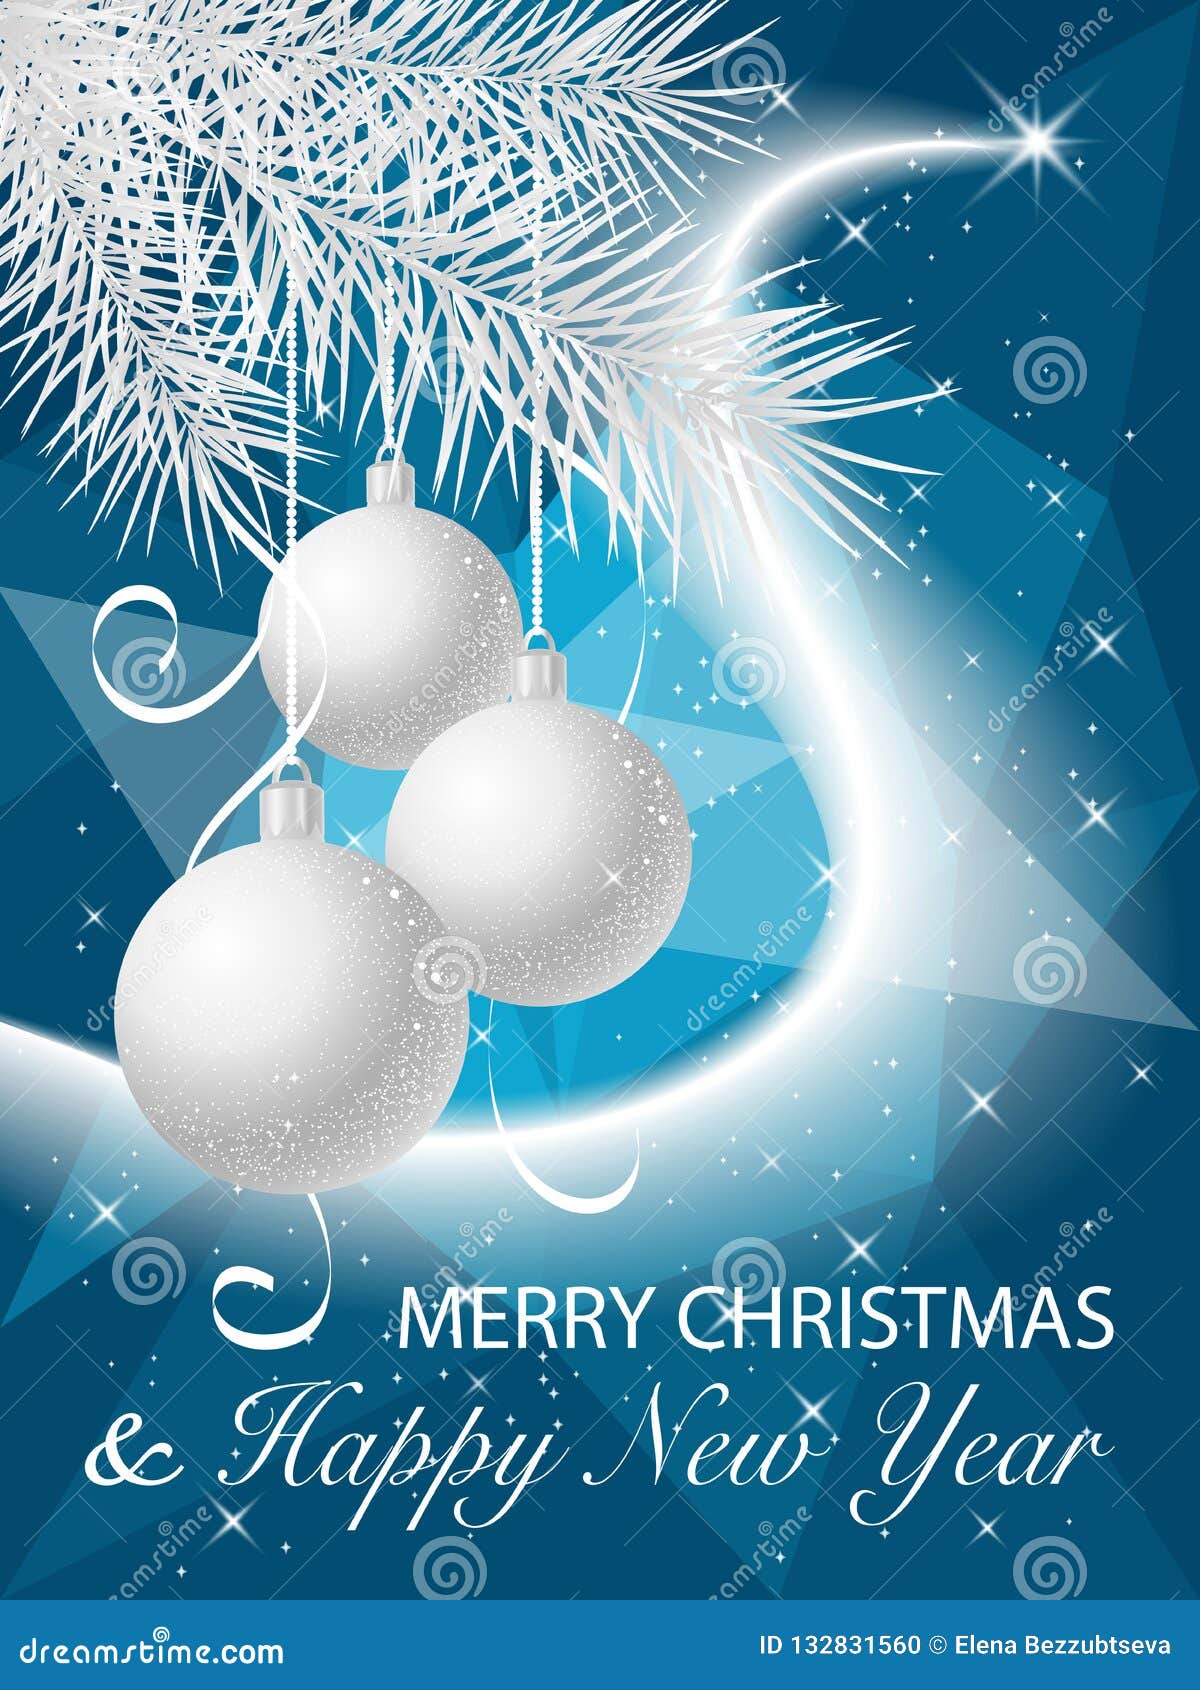 Navidad Y Feliz Año Nuevo Tarjeta De Felicitación De 2019 Vacaciones De Ilustración del Vector - Ilustración de bandera, snowflake: 132831560